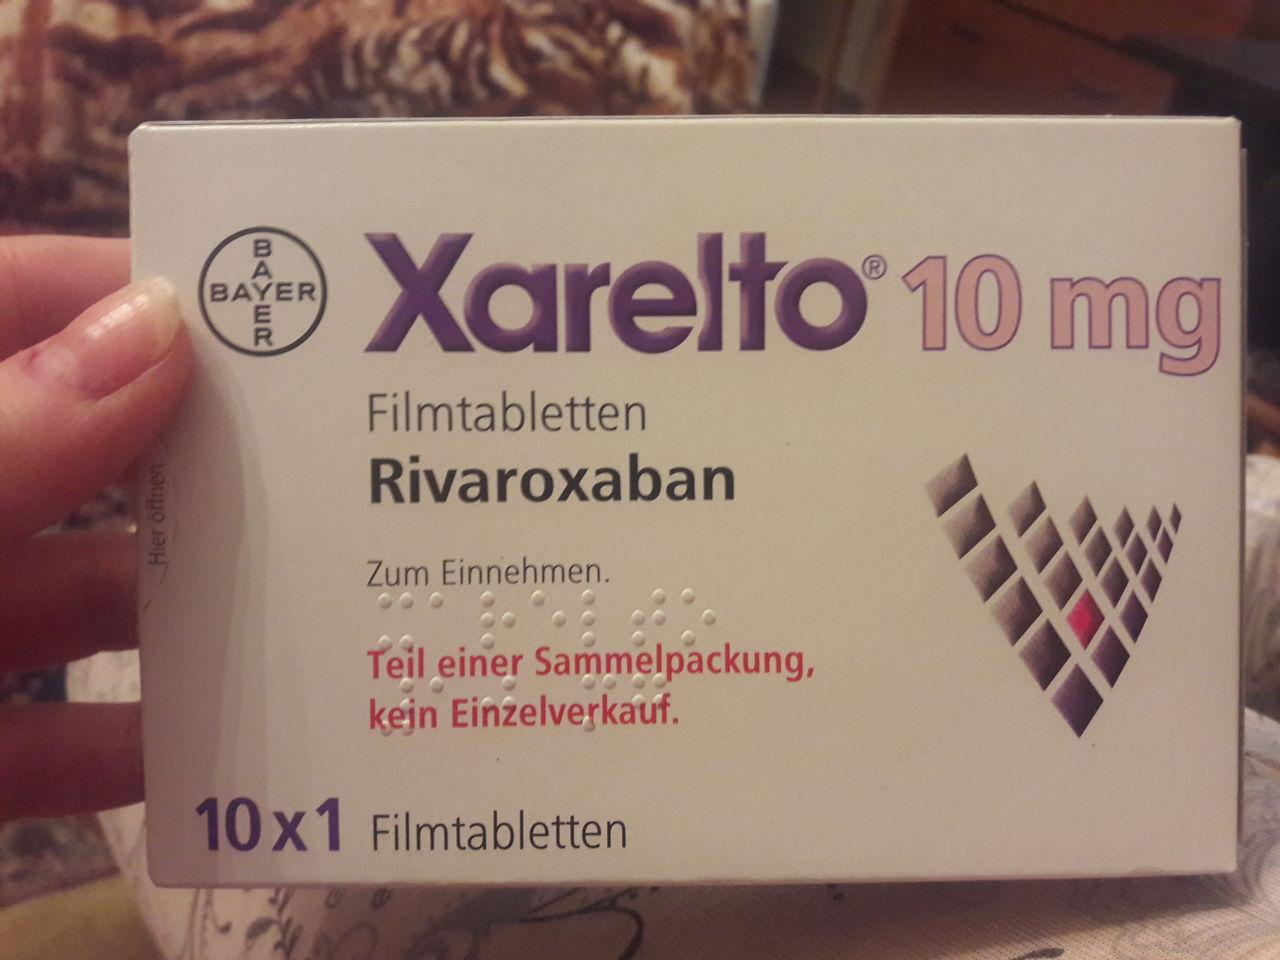 Купить таблетки ксарелто дешево. Ксарелто 10 мг. Ксарелто 15 в Турции. Ксарелто 10 мг фото. Ксарелто Германия.